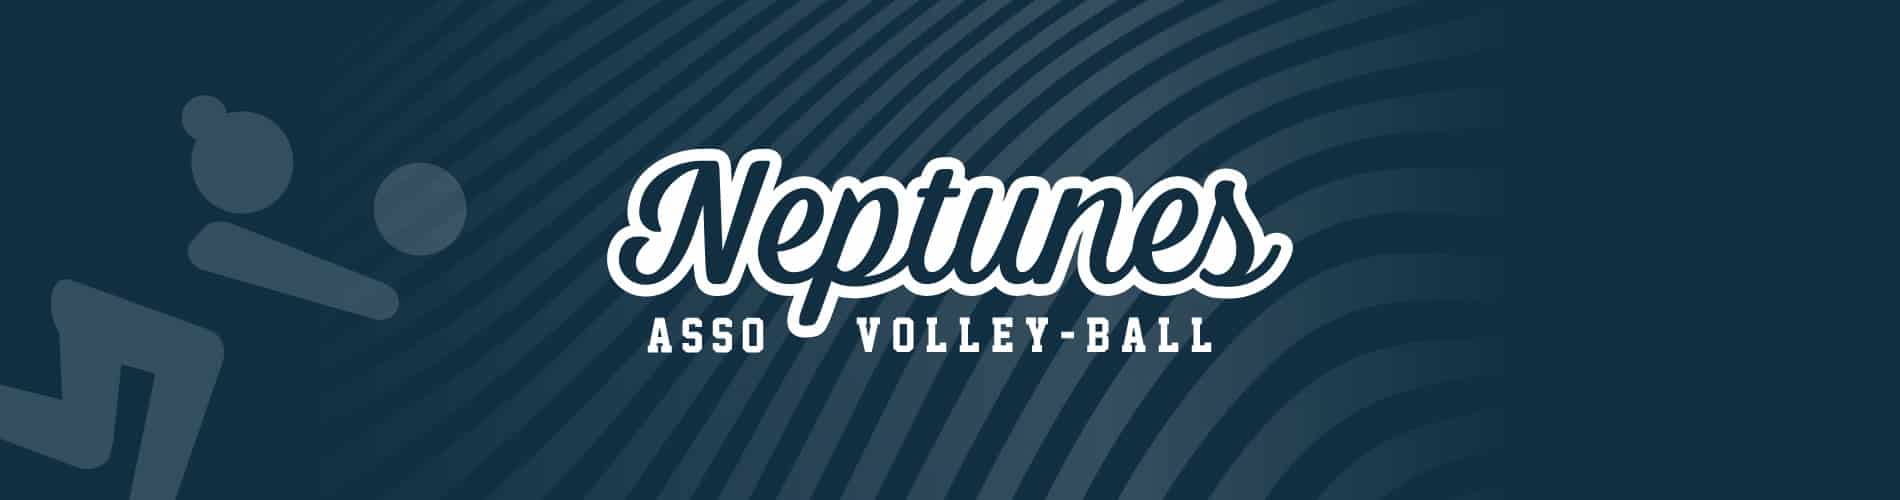 Neptunes-Asso-Volley